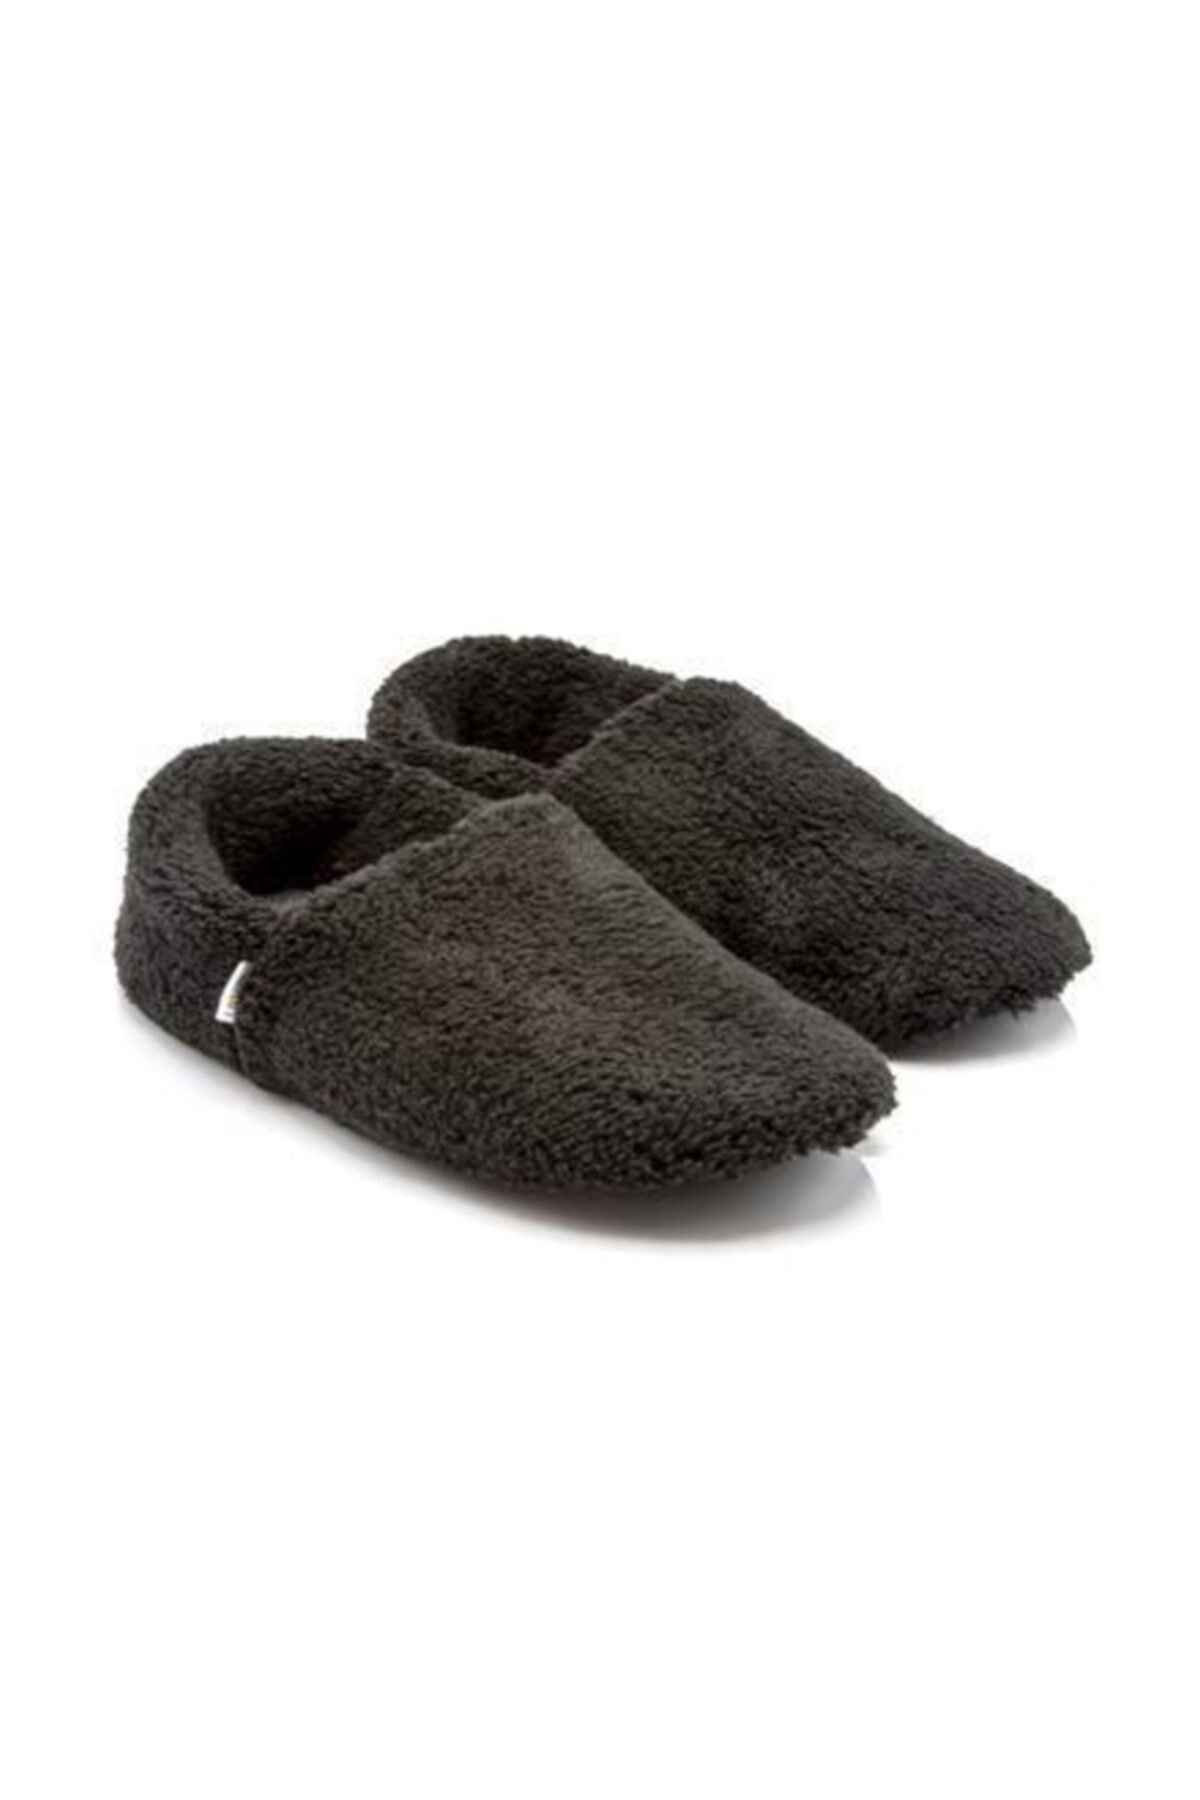 Twigy Tt1200 Cool Siyah Erkek Kışlık Ev Ayakkabısı